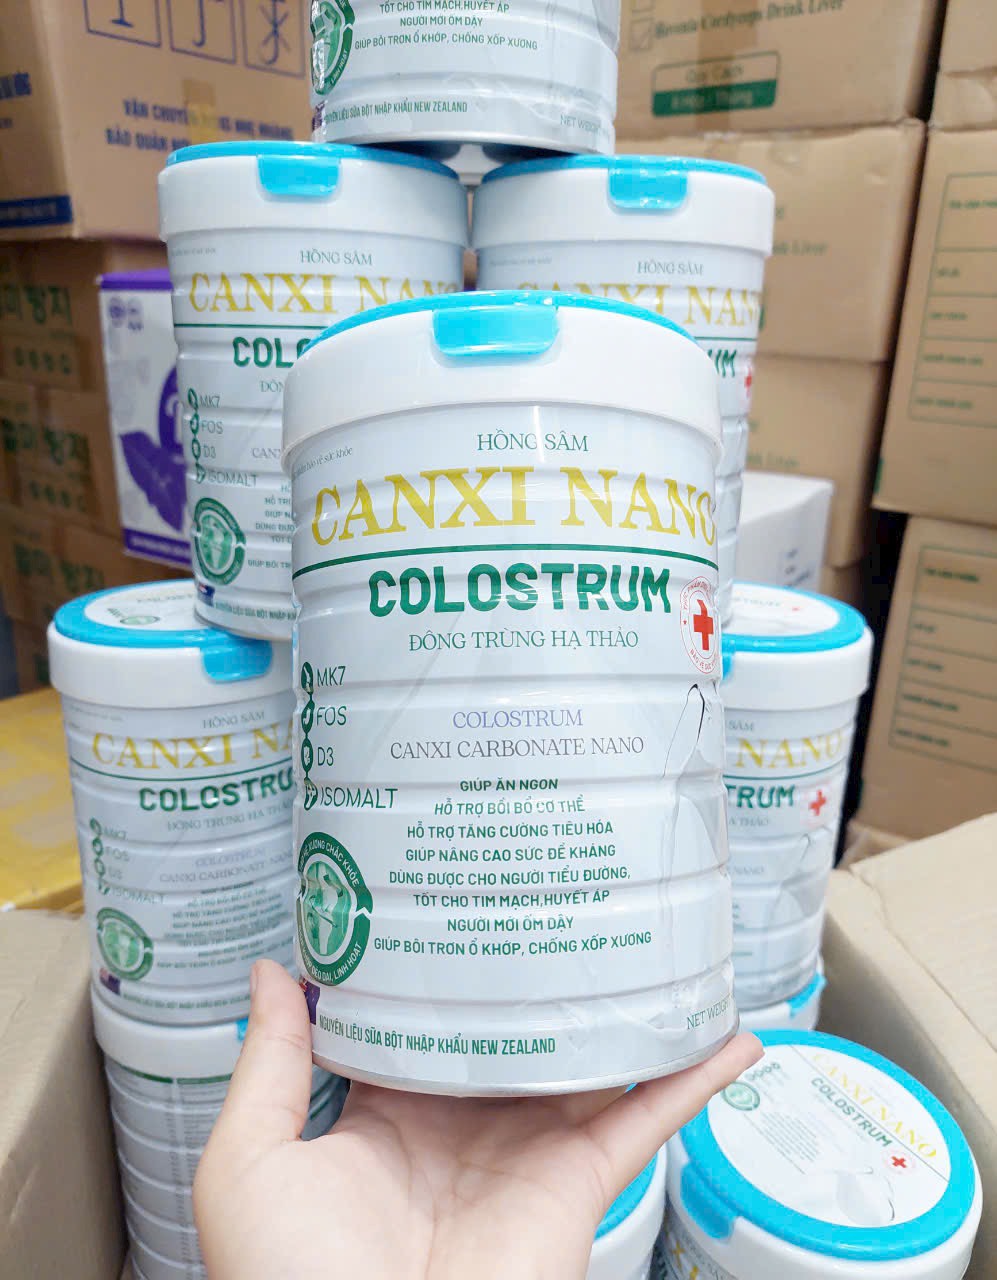 Sữa Canxi Nano Colostrum